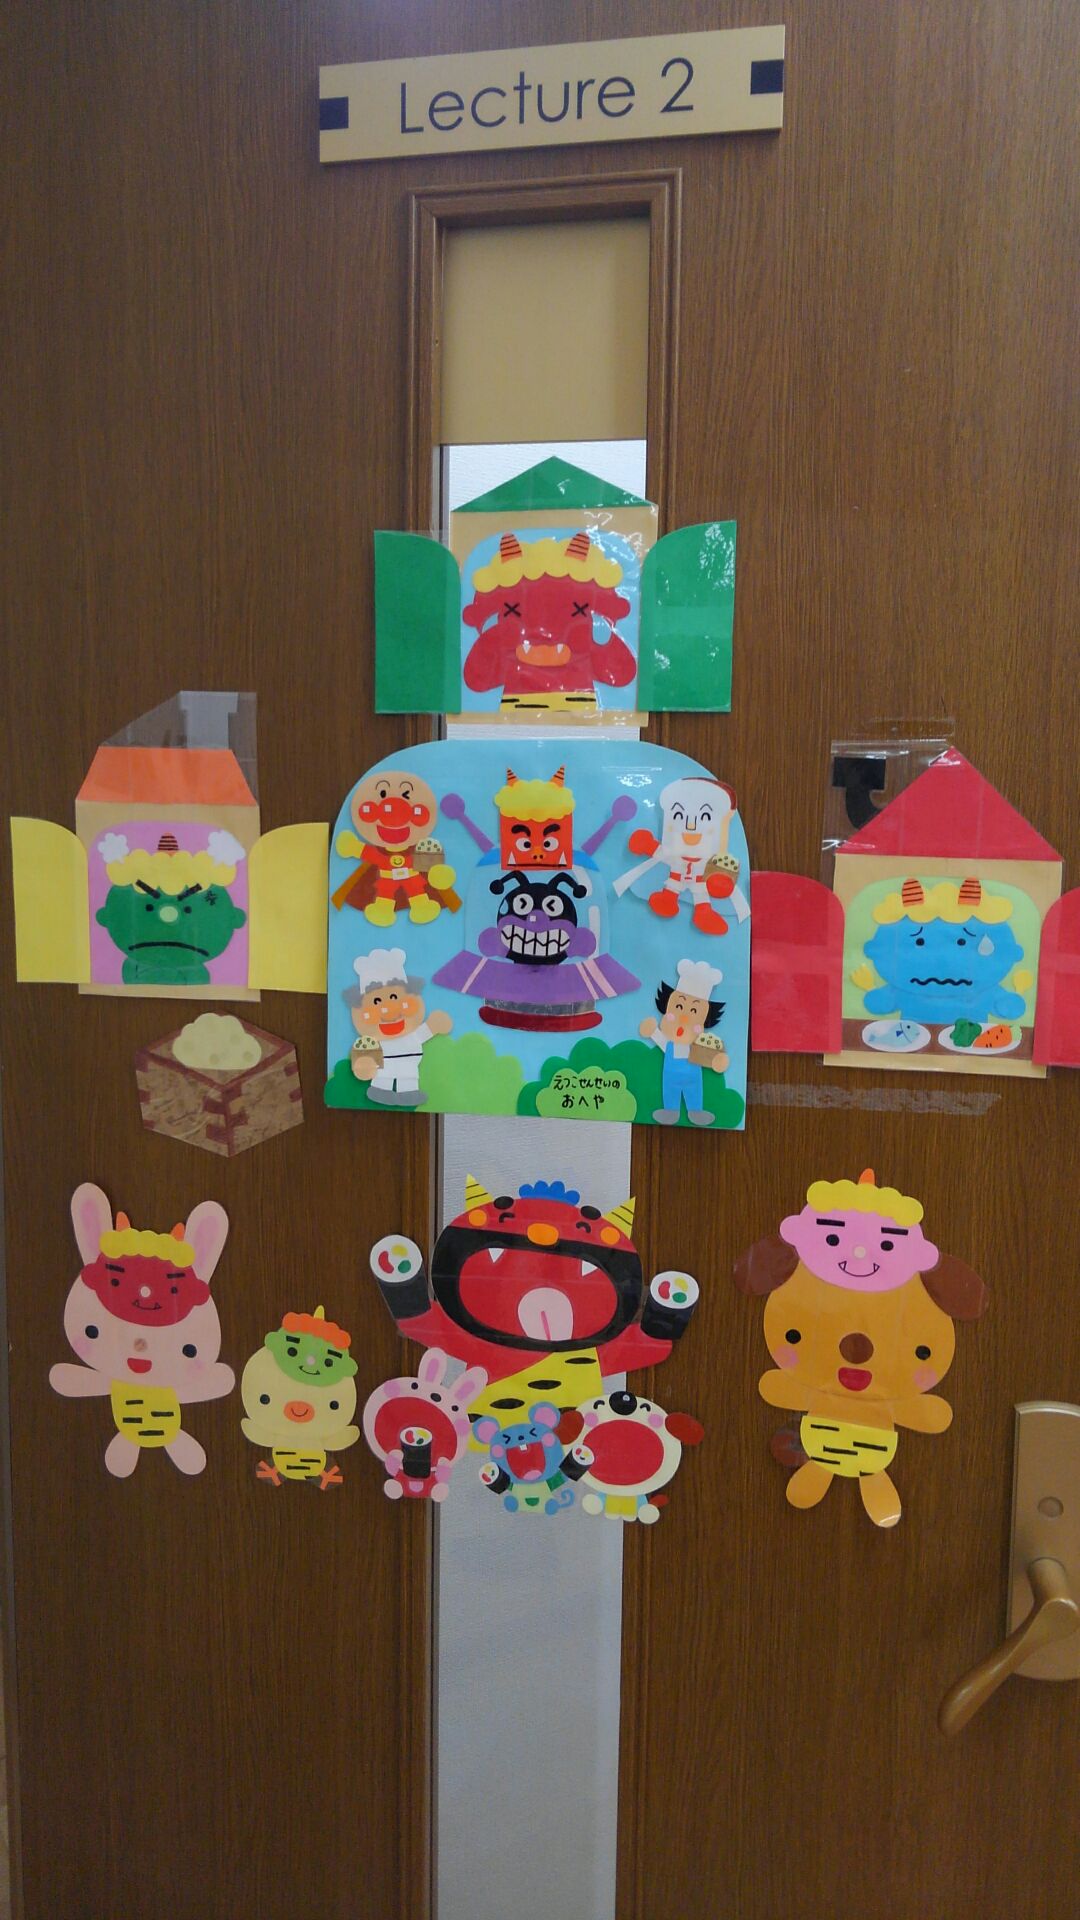 教室の扉に貼られた装飾の数々。鬼さん、豆、恵方巻など「節分」をテーマにした絵の他、アンパンマンのキャラクター達が豆まきをしているイラストも張られている。